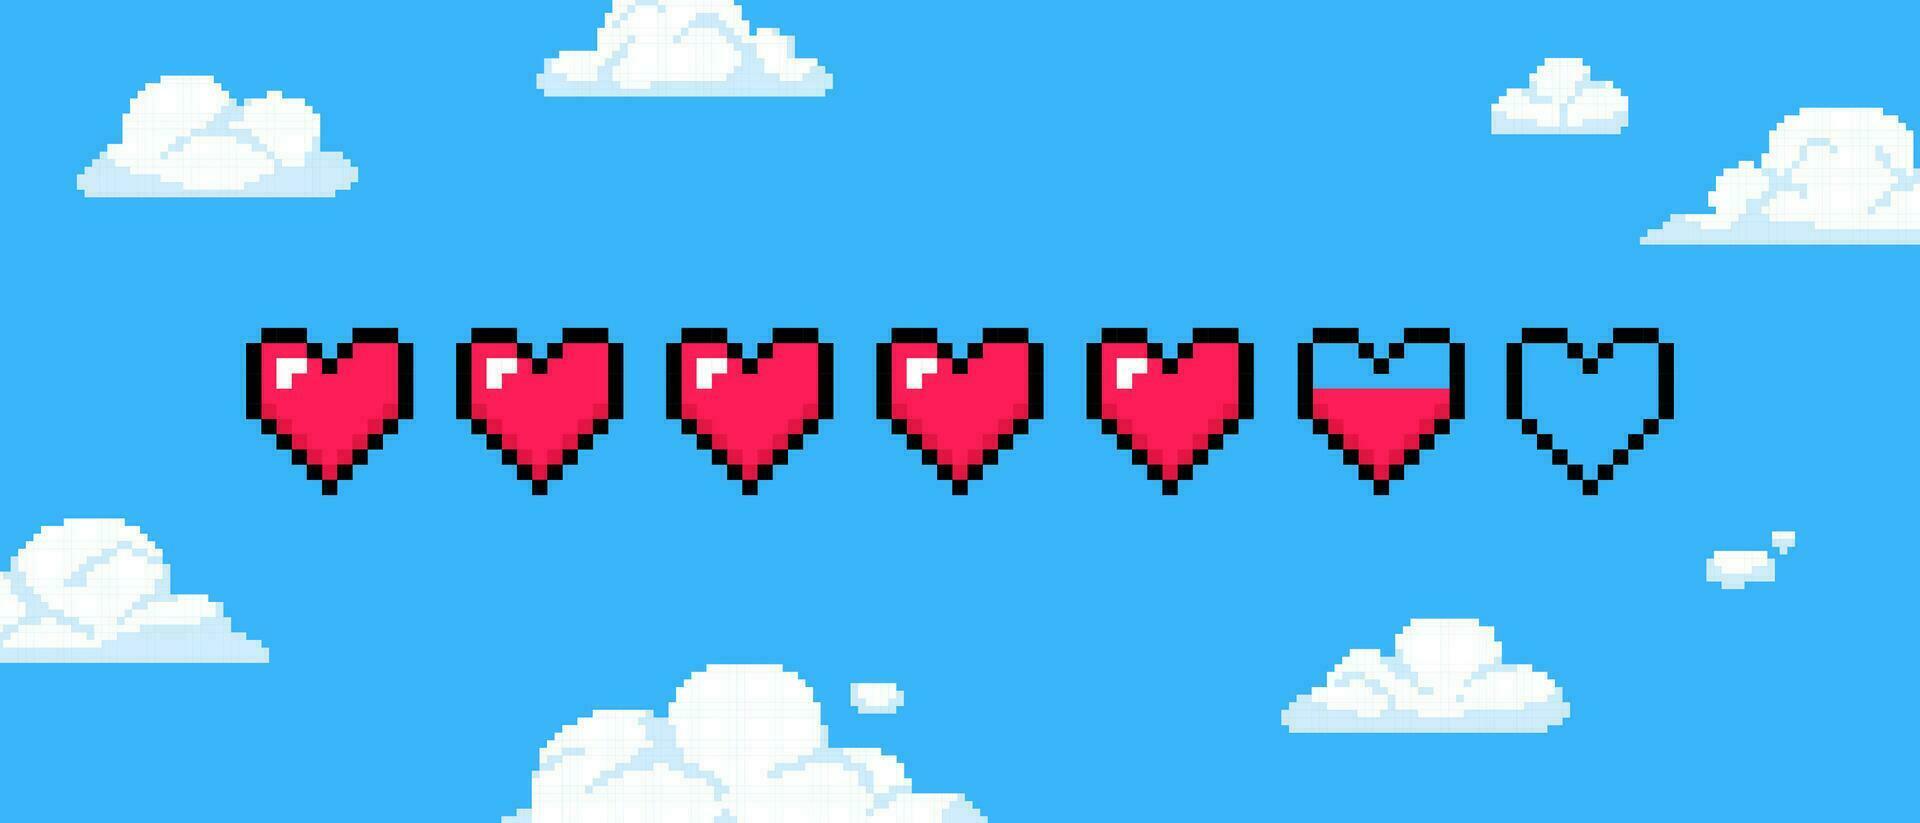 Pixel Herz Spiel Gesundheit. 8 bisschen Leben Bar mit rot Herzen, retro 80er, 90er Jahre Spielen Schnittstelle auf Blau Himmel mit Weiß Pixel Wolken Hintergrund. Vektor Illustration